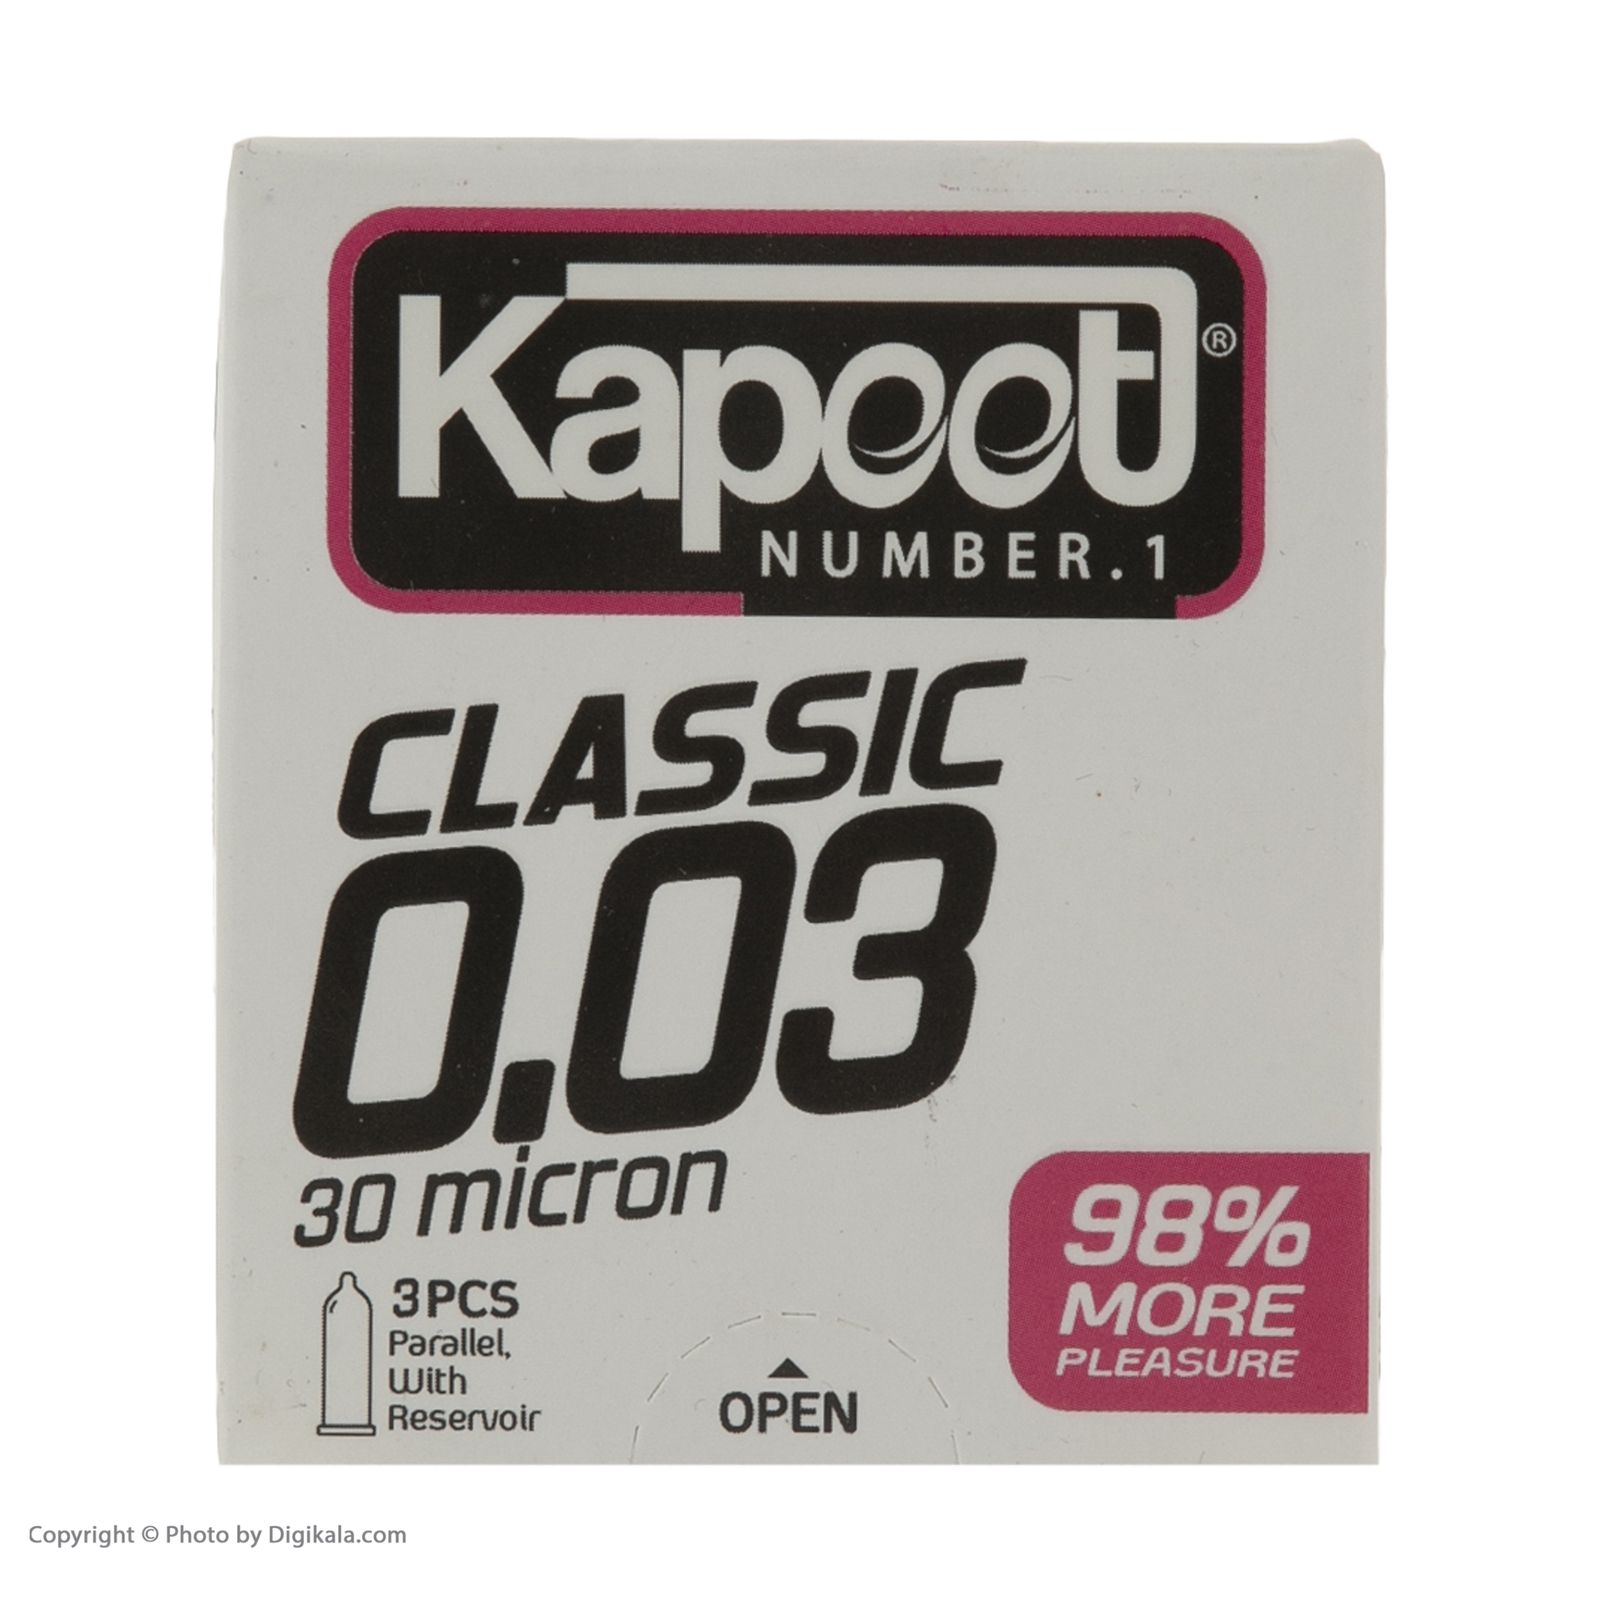 کاندوم کاپوت مدل Classic بسته 3 عددی  -  - 3